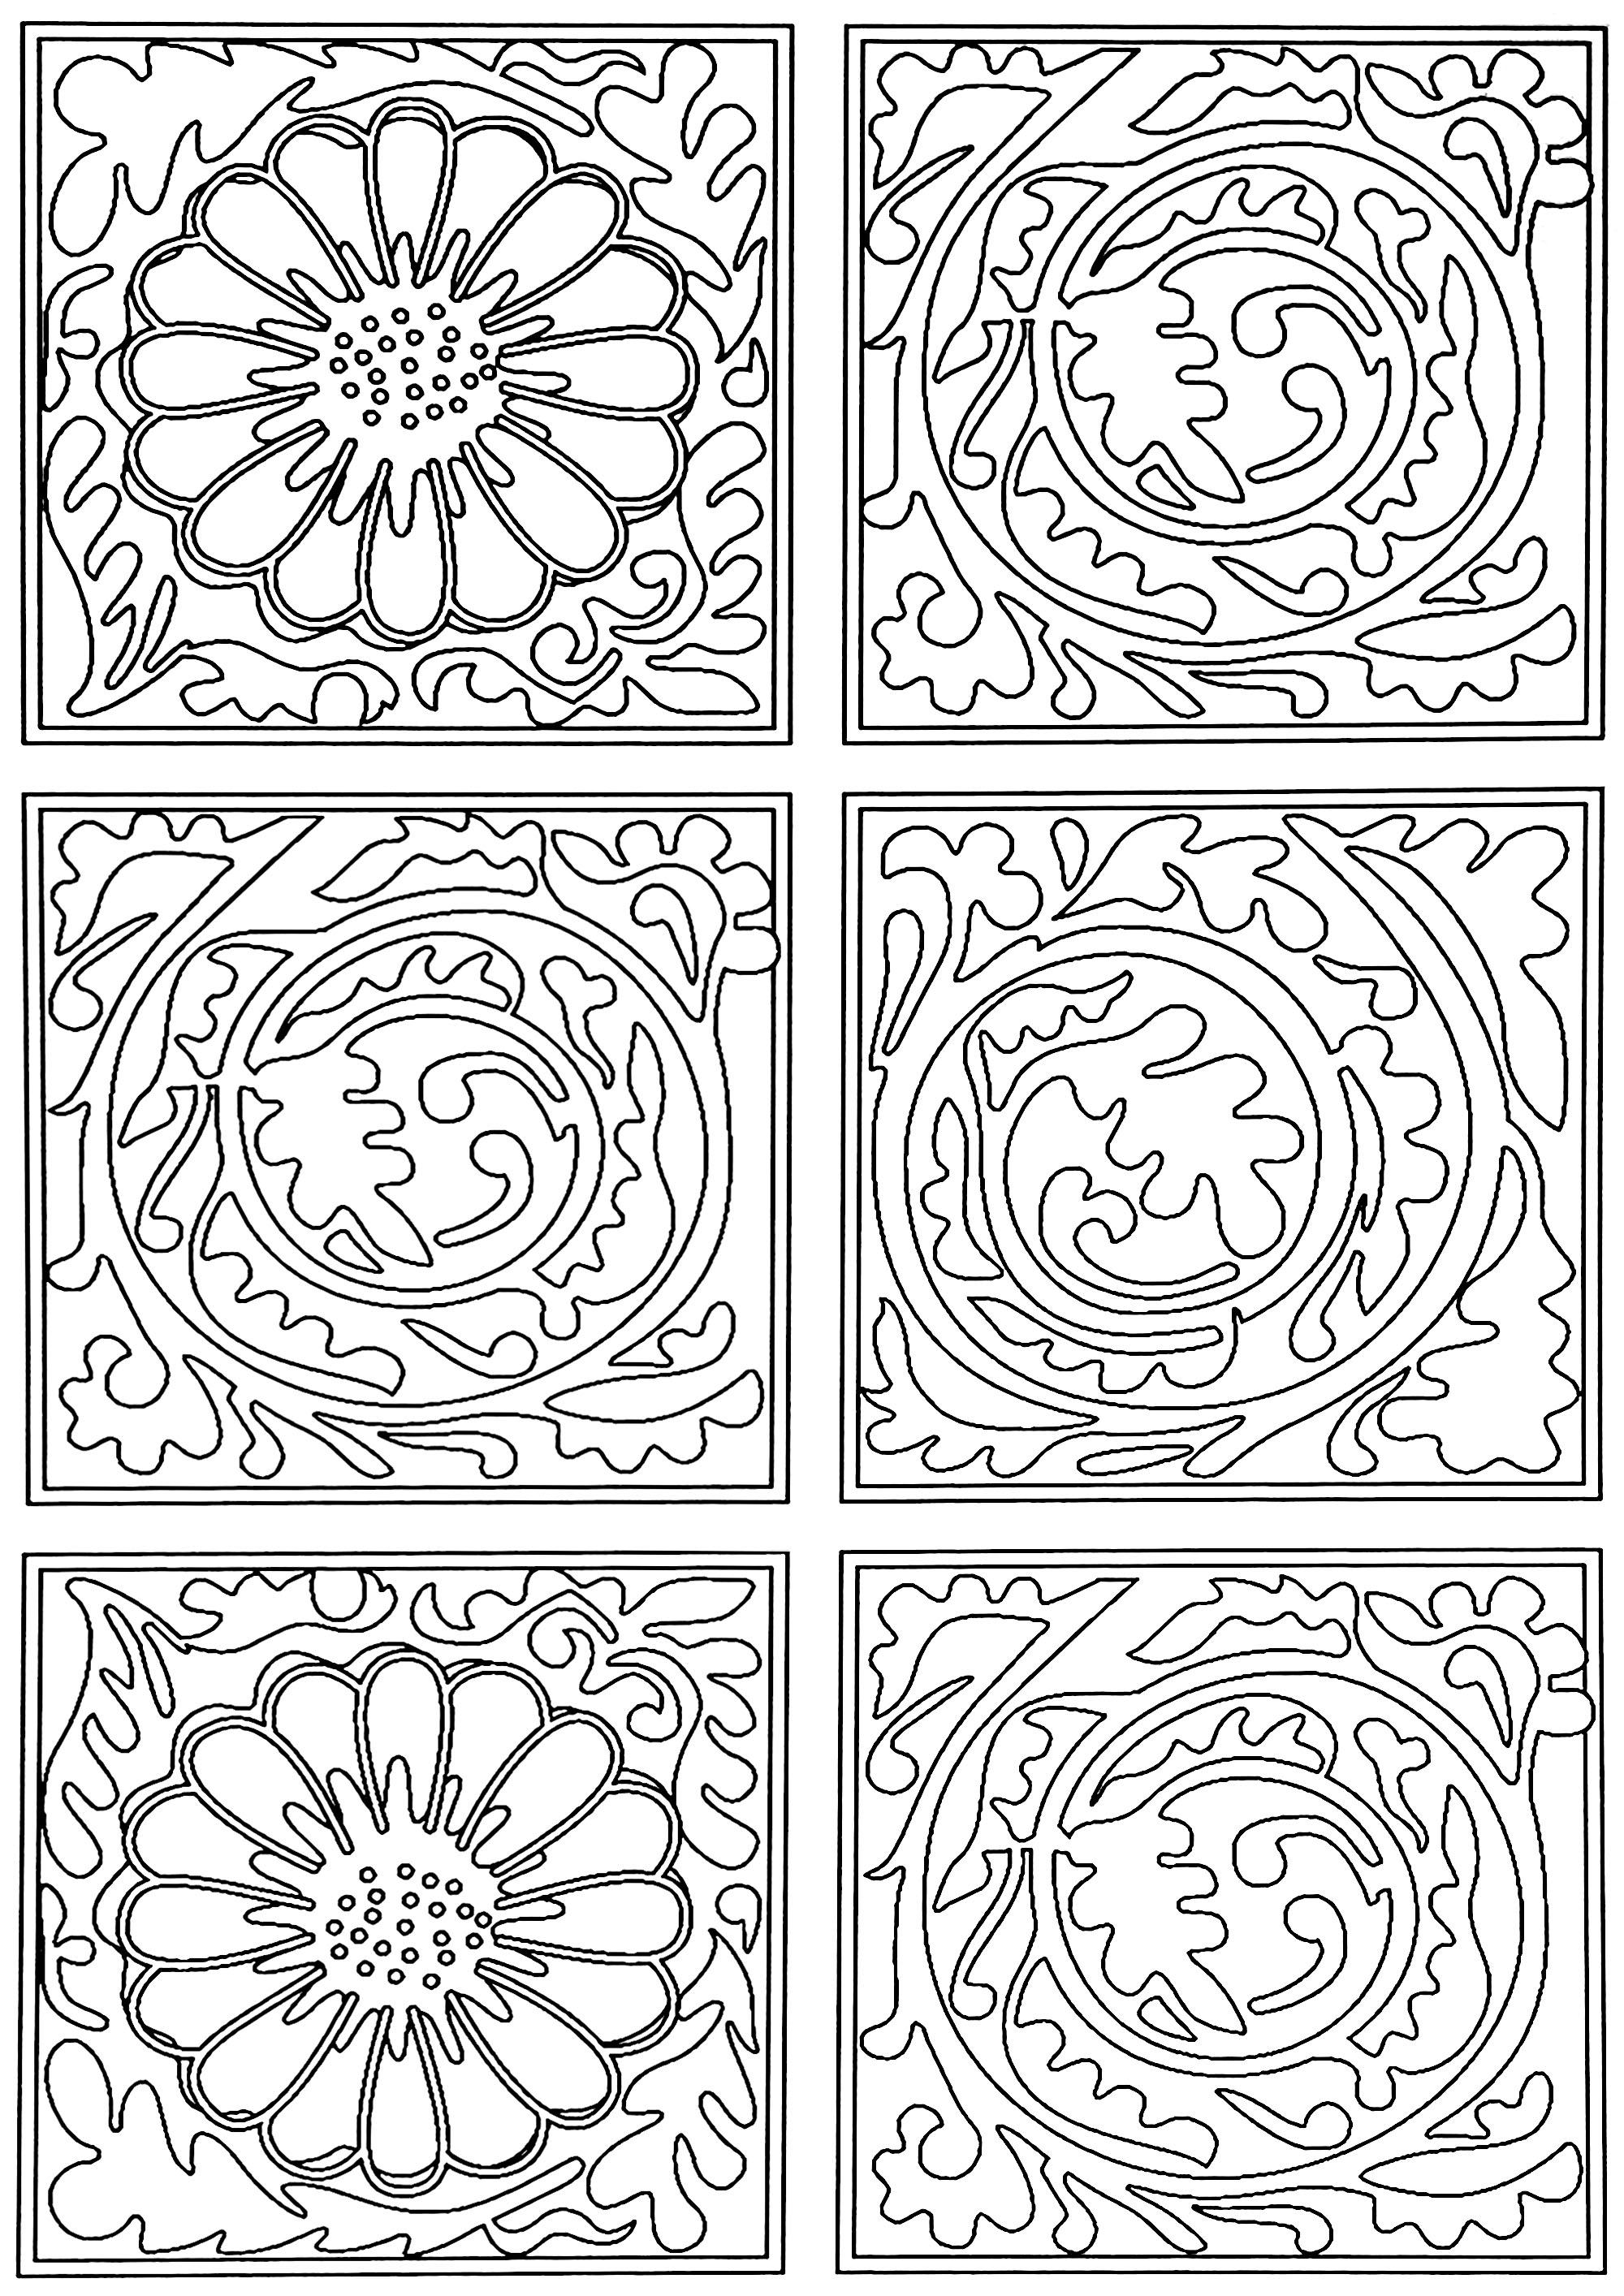 Ausmalbild nach dem Tapetenmuster von William Morris: 'Diaper' aus dem Jahr 1870. Dieses Muster besteht aus Quadraten mit Blattrollen, die von Quadraten mit Blumen unterbrochen werden.